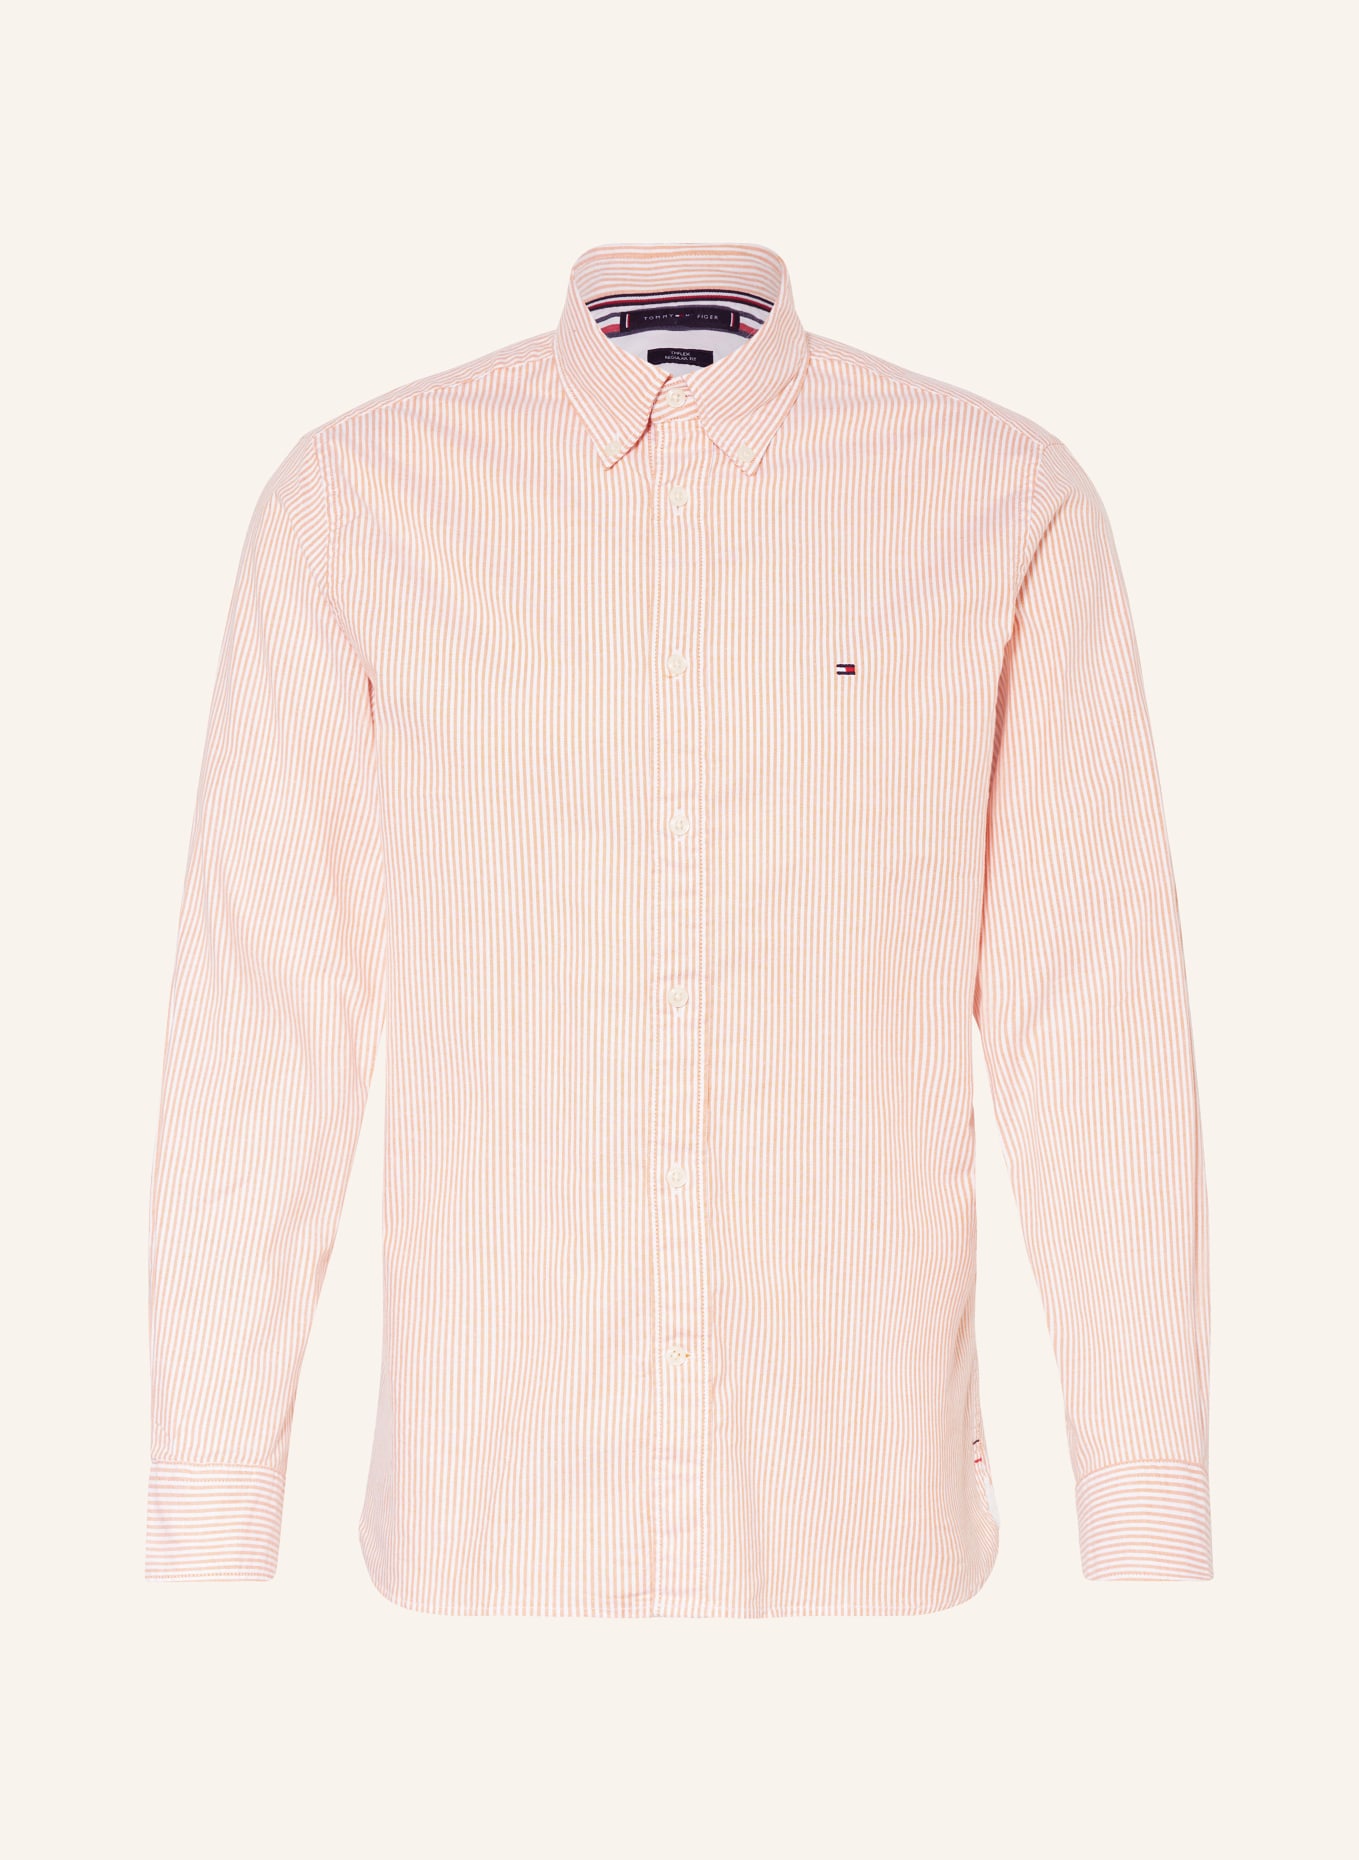 TOMMY HILFIGER Oxfordhemd Regular Fit, Farbe: HELLORANGE/ WEISS (Bild 1)